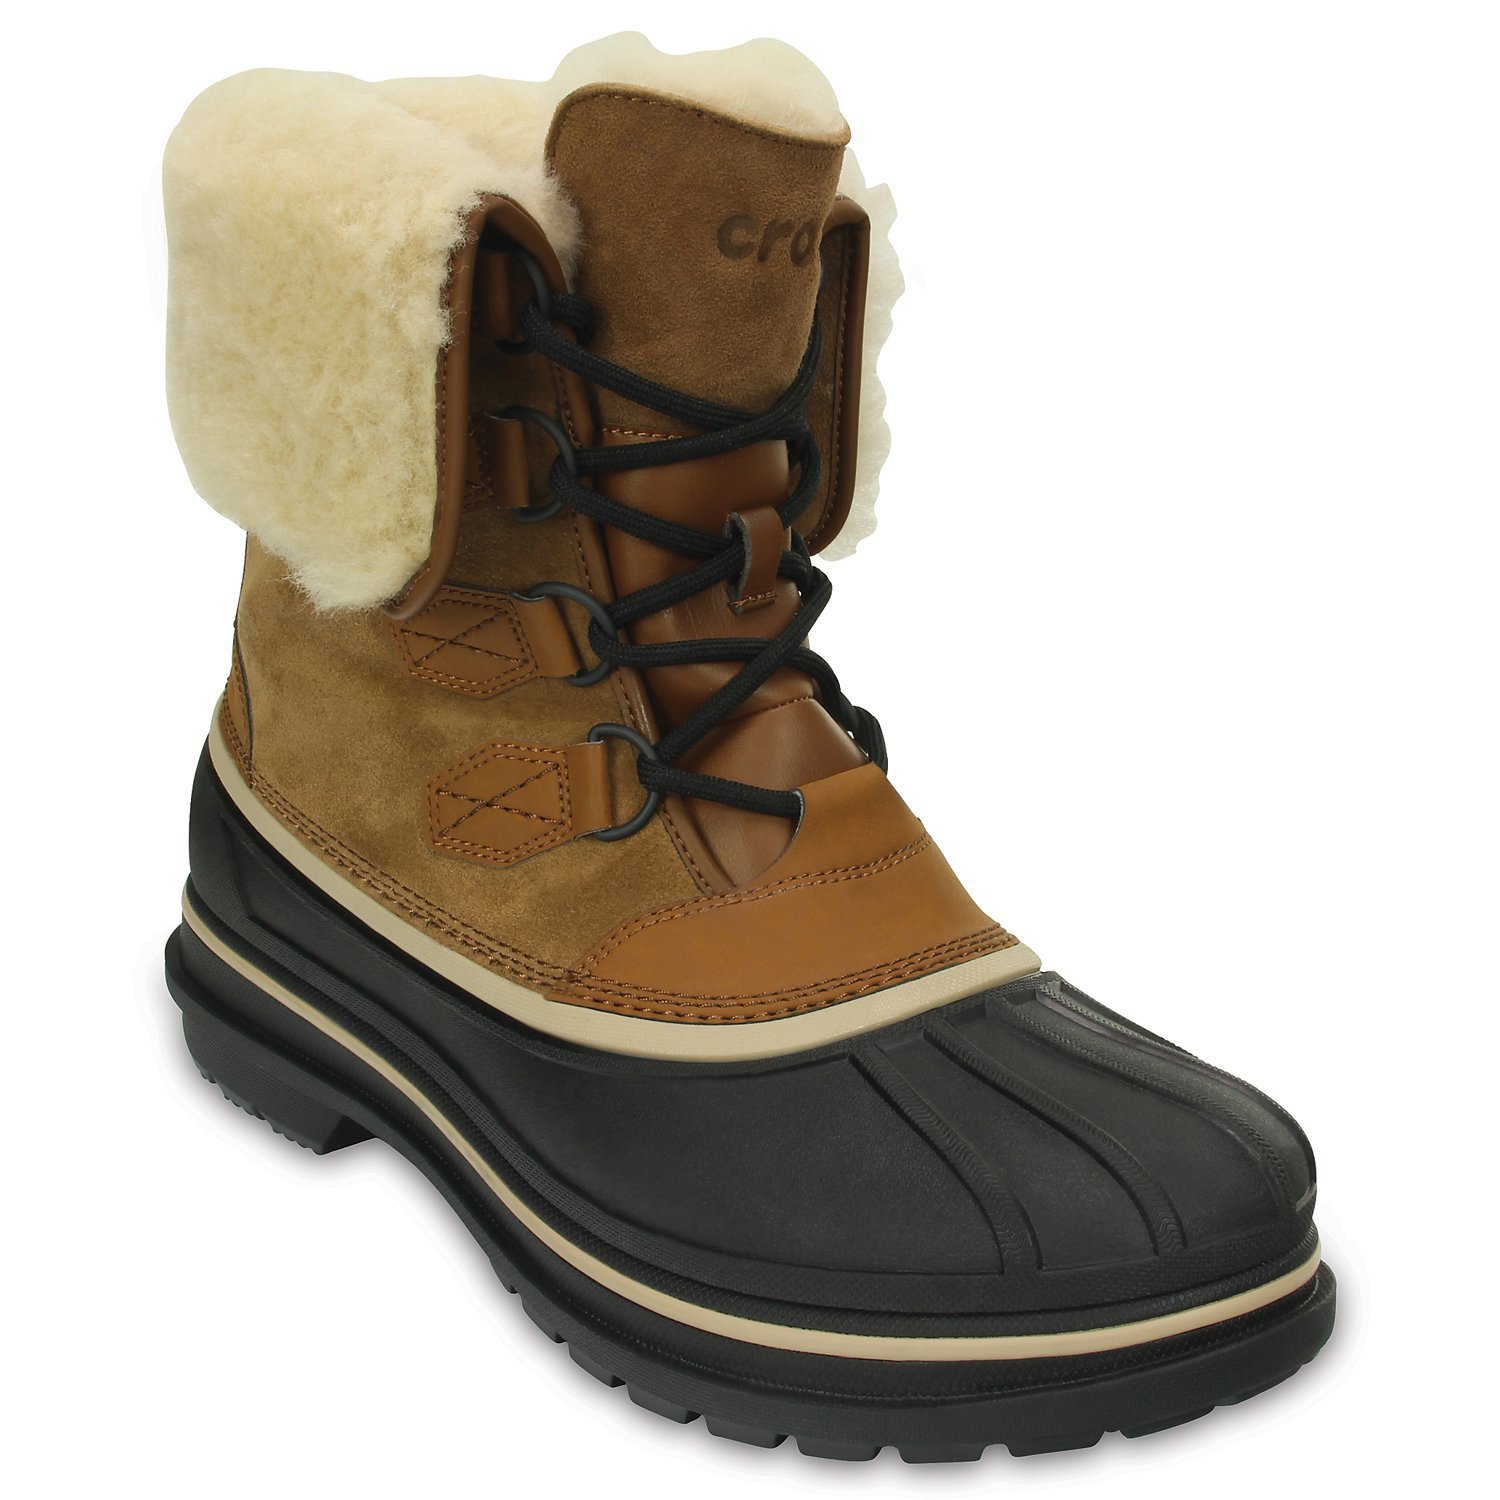 Ботинки мужские AllCast II Luxe Boot (коричневый) 48146 203868-21A купить вМоскве на Диномама.ру